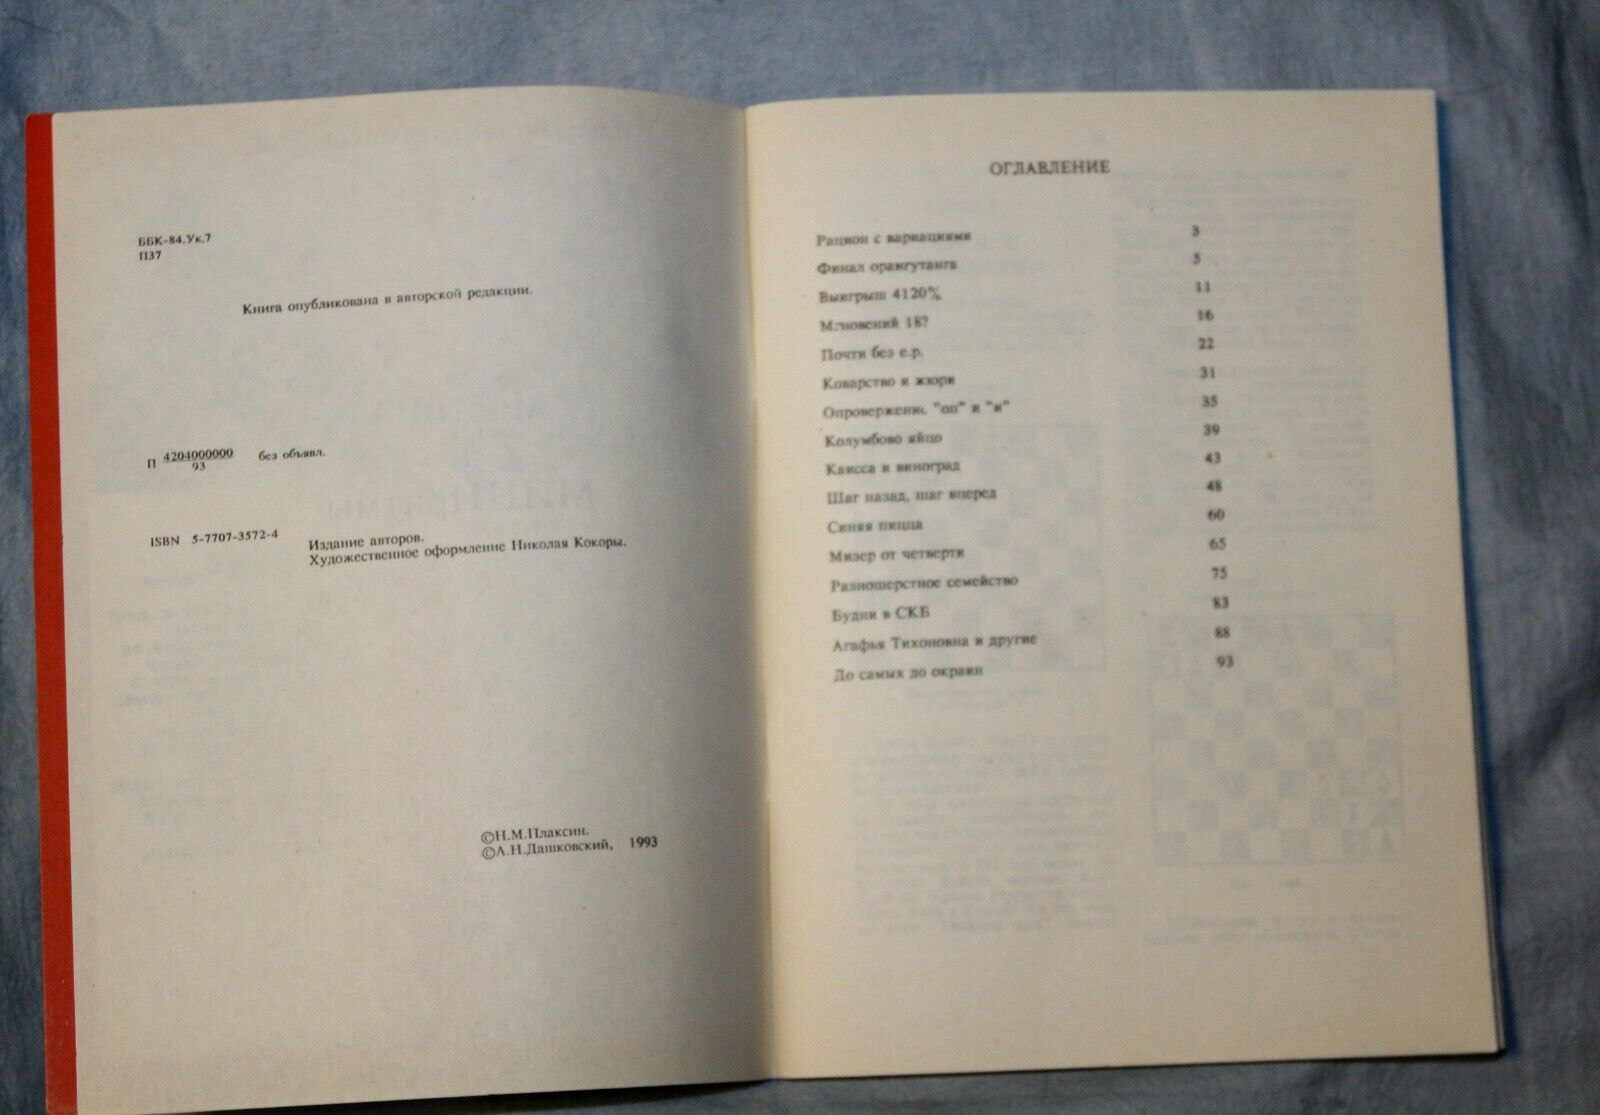 11204.Chess Problem Book: Plaksin Dashkovsky. Masters and mini-rhythms. Cherkassy 1993